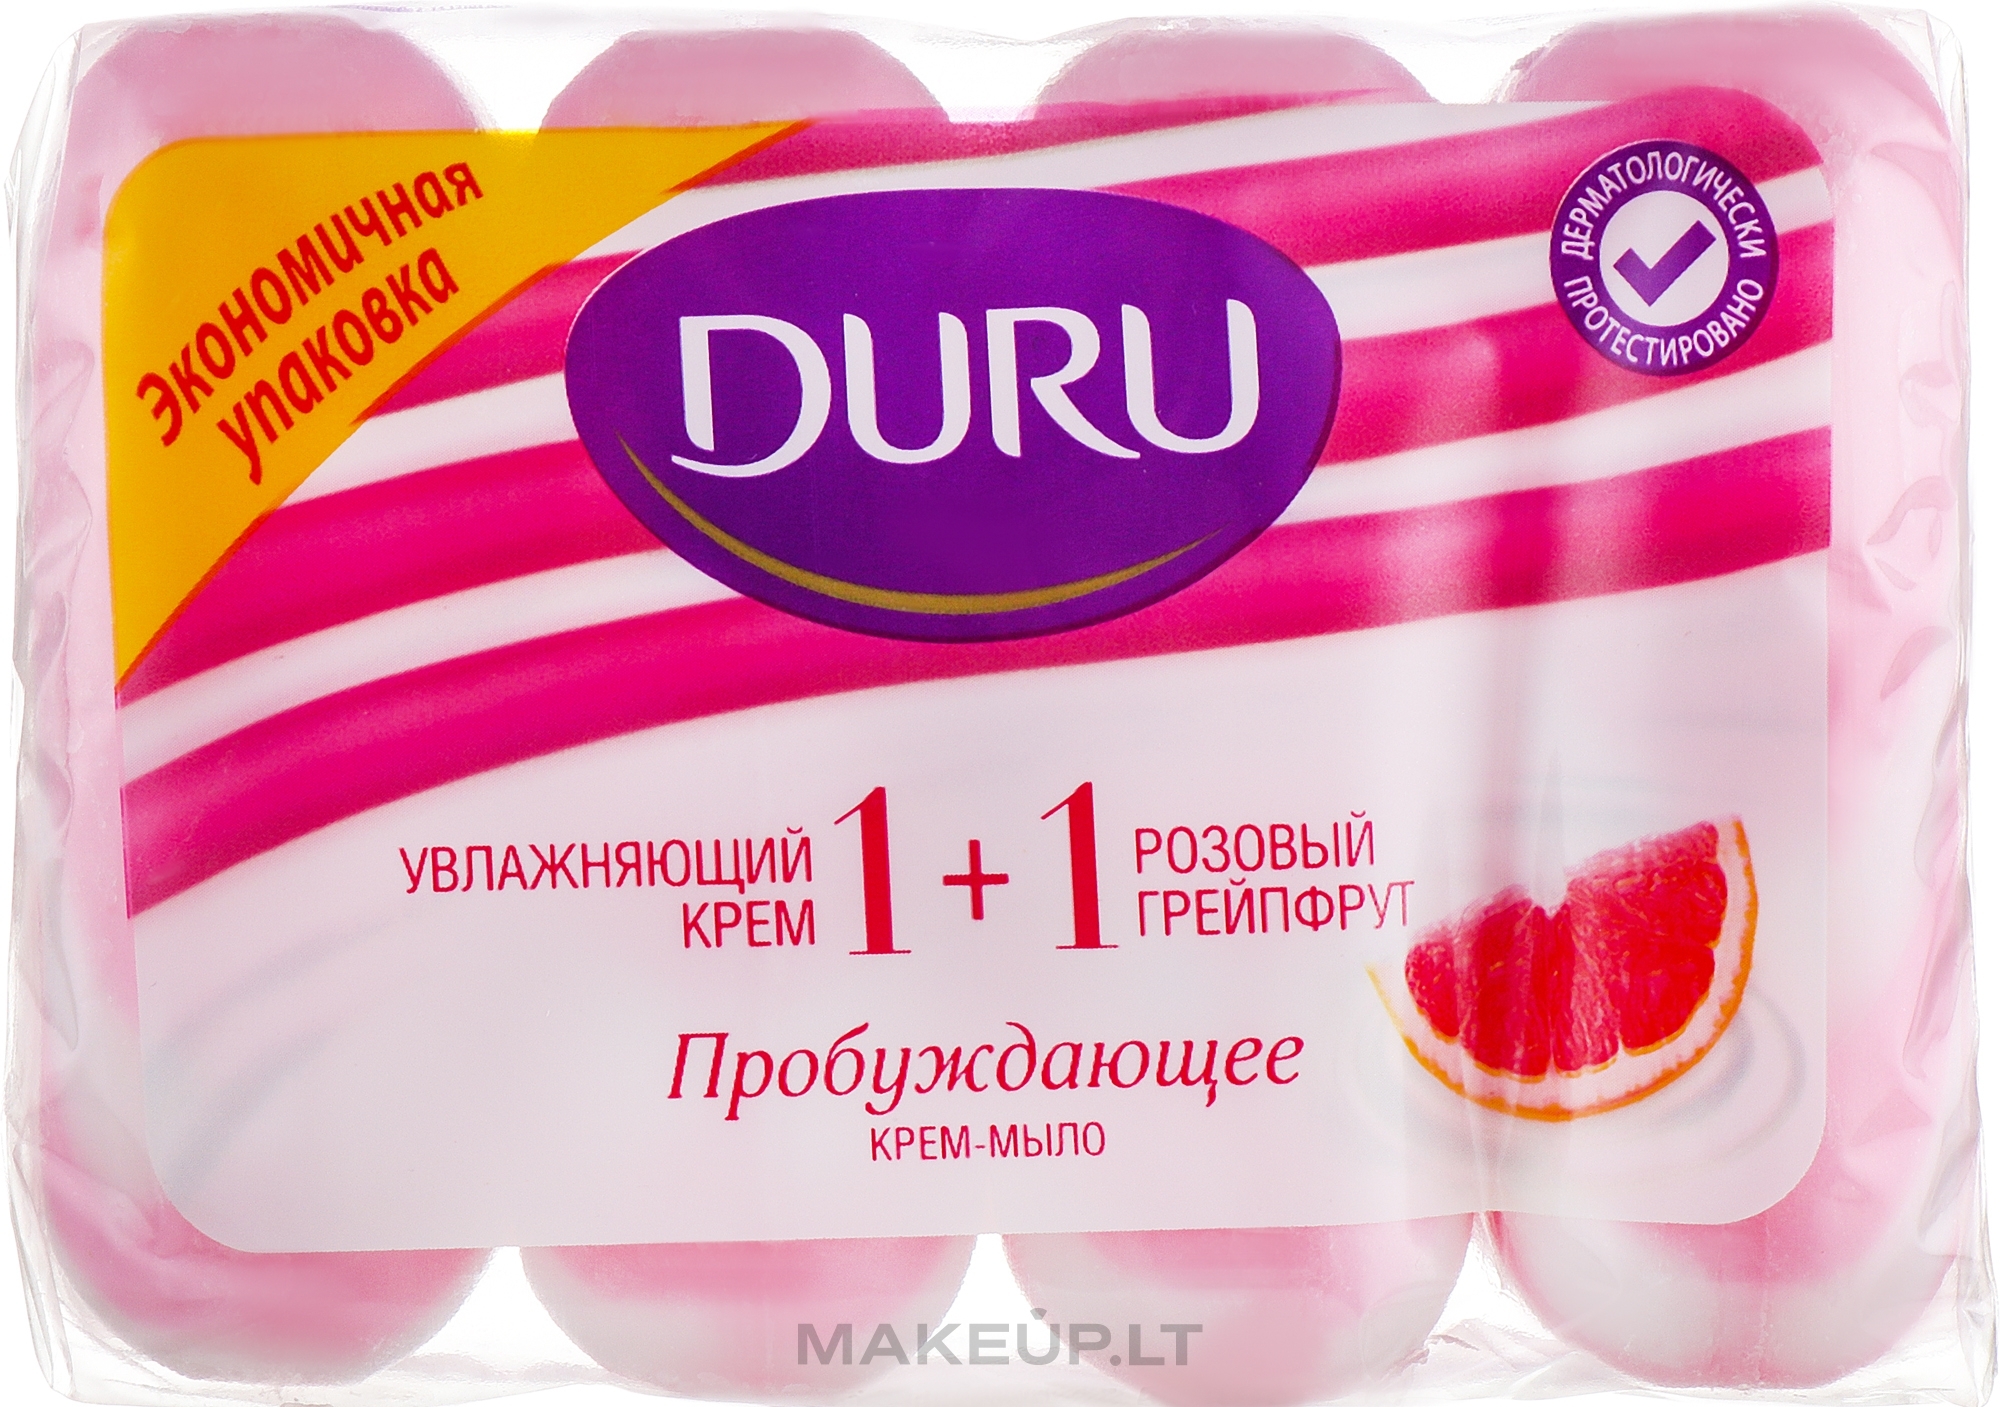 Мыло "Дуру" увл.крем + роз.грйп. 4*80 гр